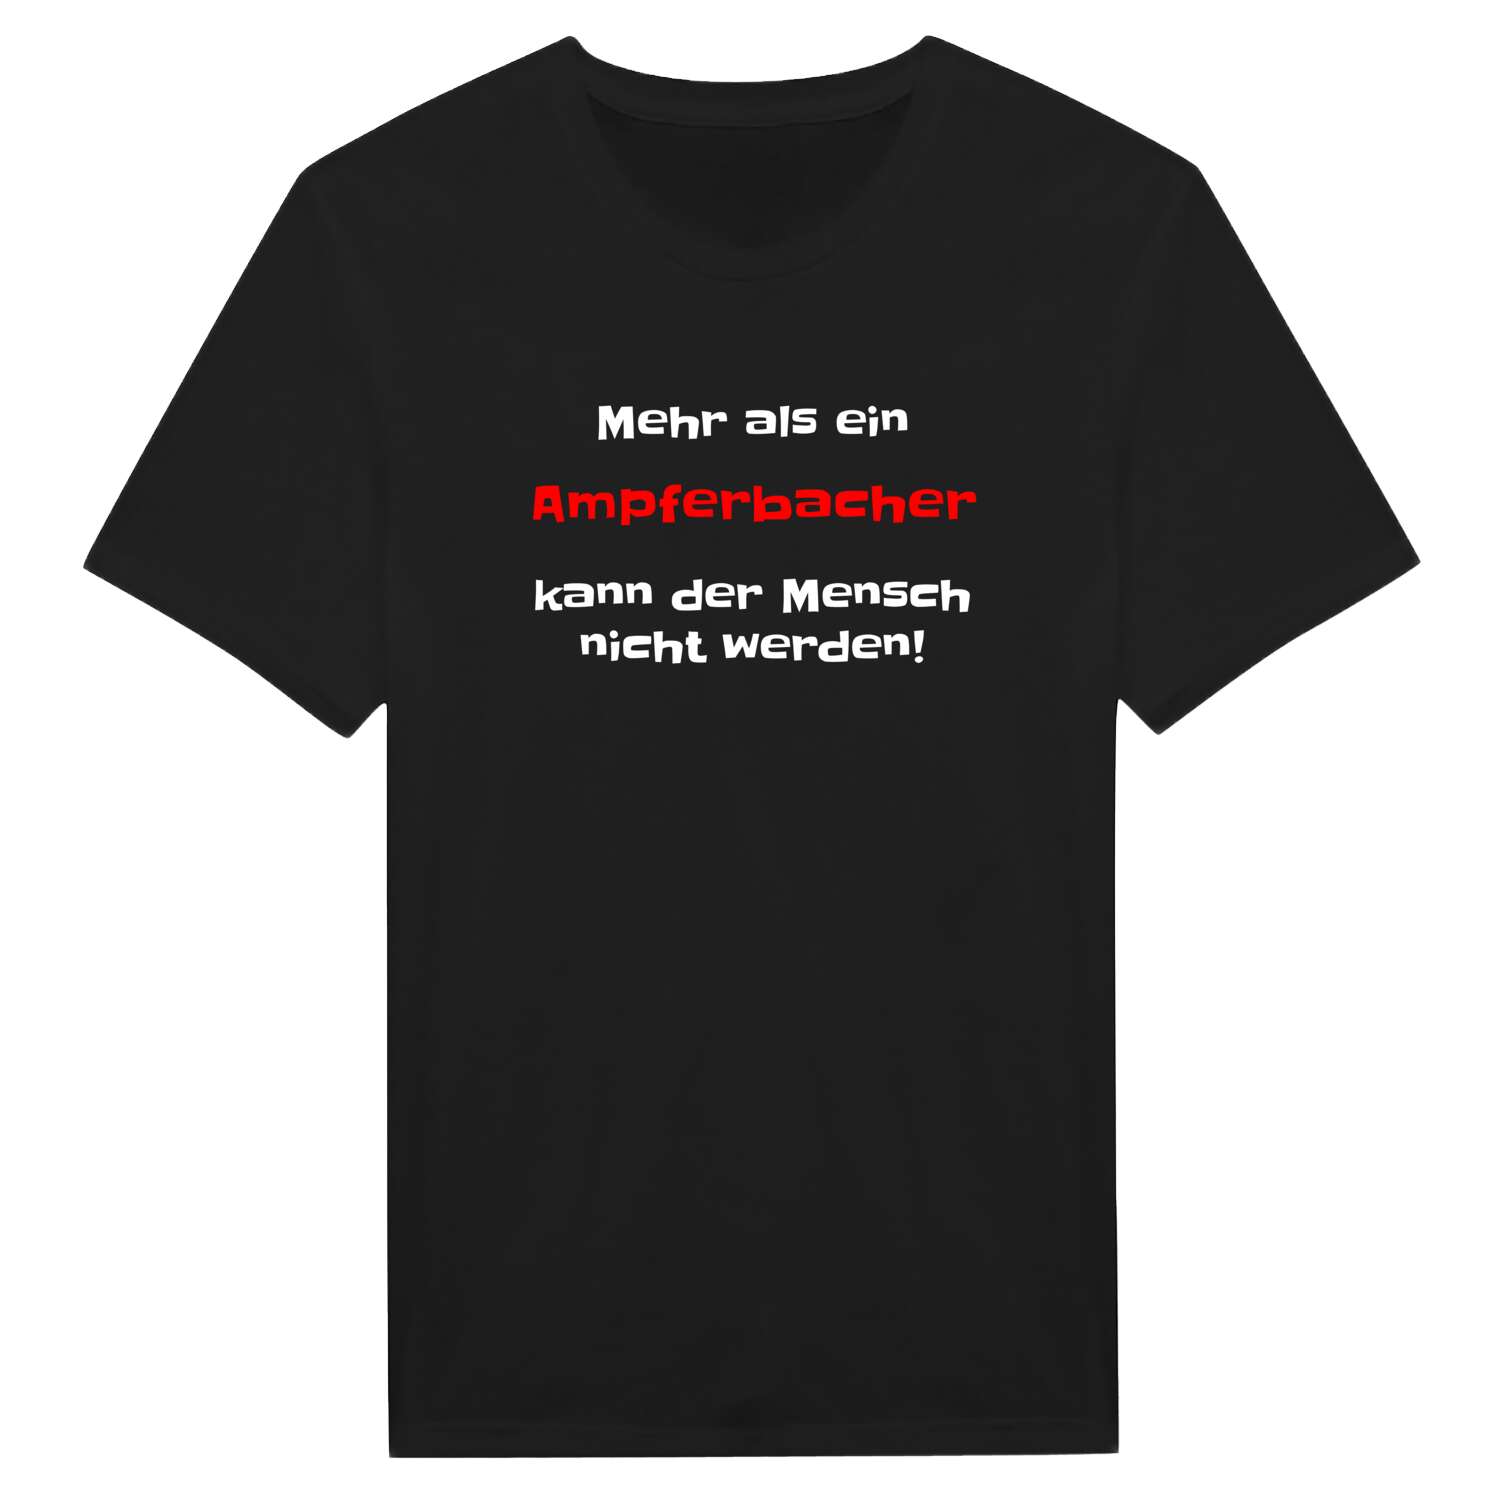 Ampferbach T-Shirt »Mehr als ein«